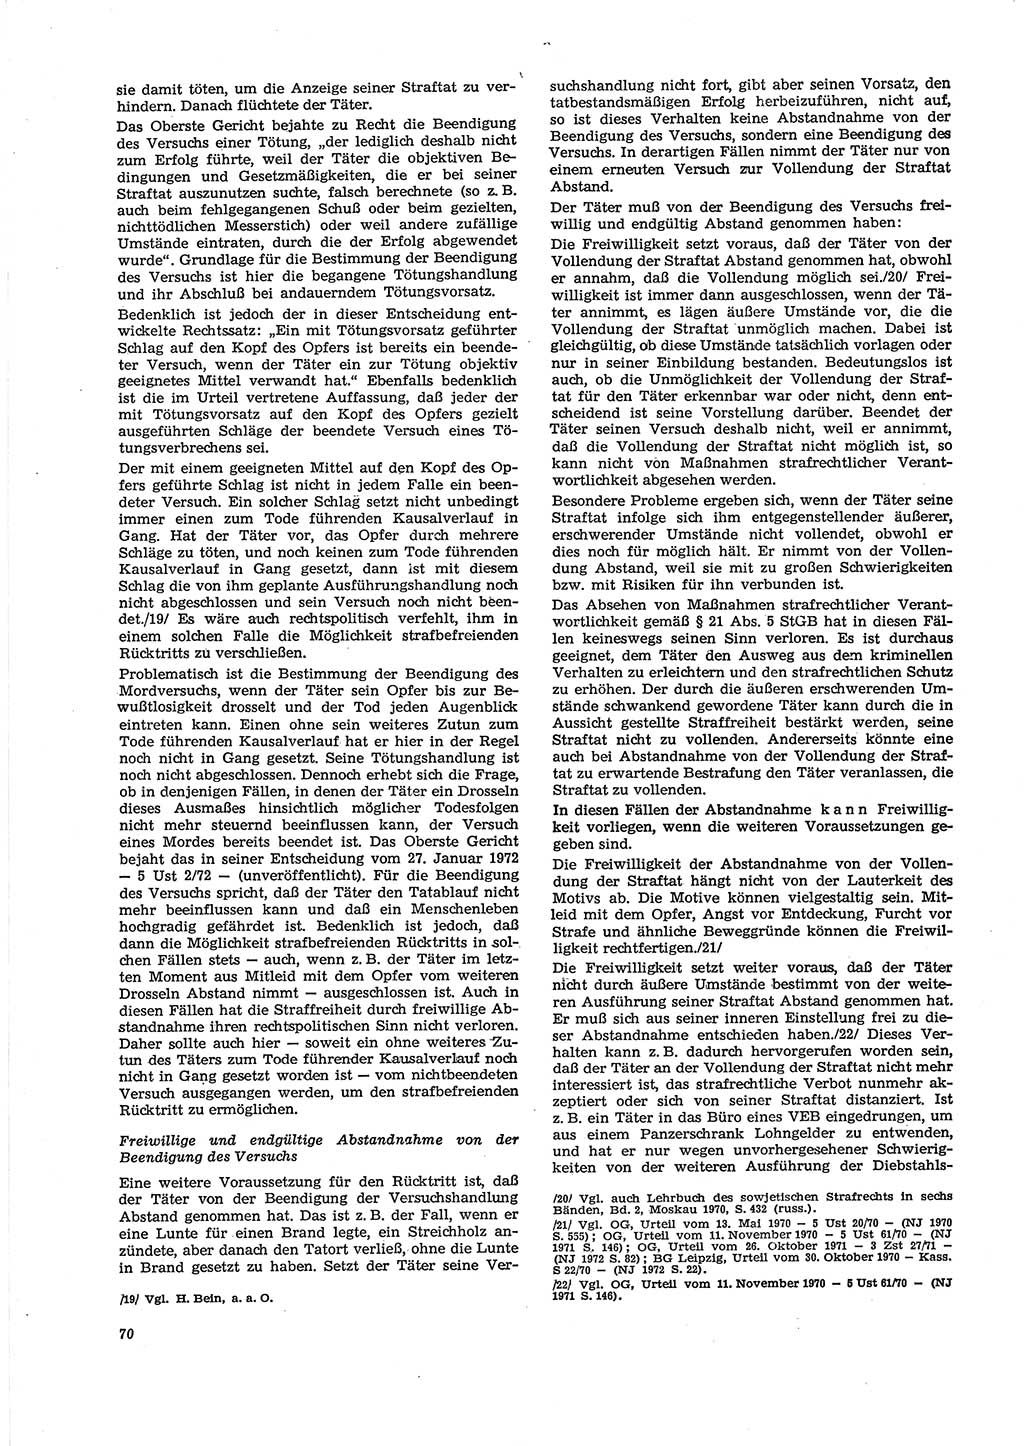 Neue Justiz (NJ), Zeitschrift für Recht und Rechtswissenschaft [Deutsche Demokratische Republik (DDR)], 29. Jahrgang 1975, Seite 70 (NJ DDR 1975, S. 70)